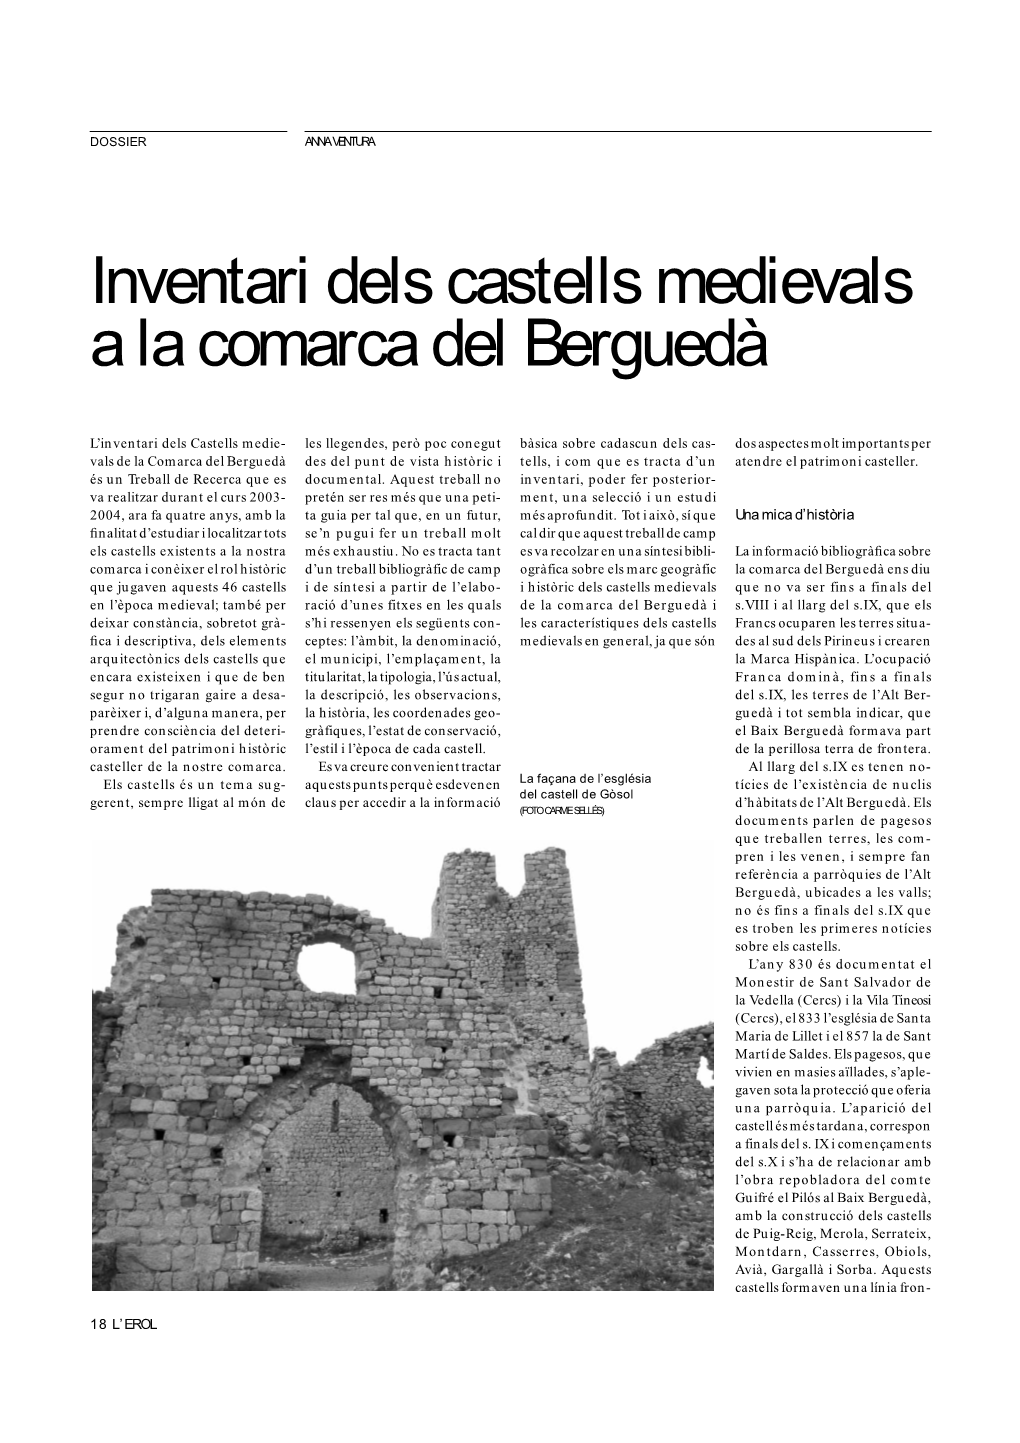 Inventari Dels Castells Medievals a La Comarca Del Berguedà